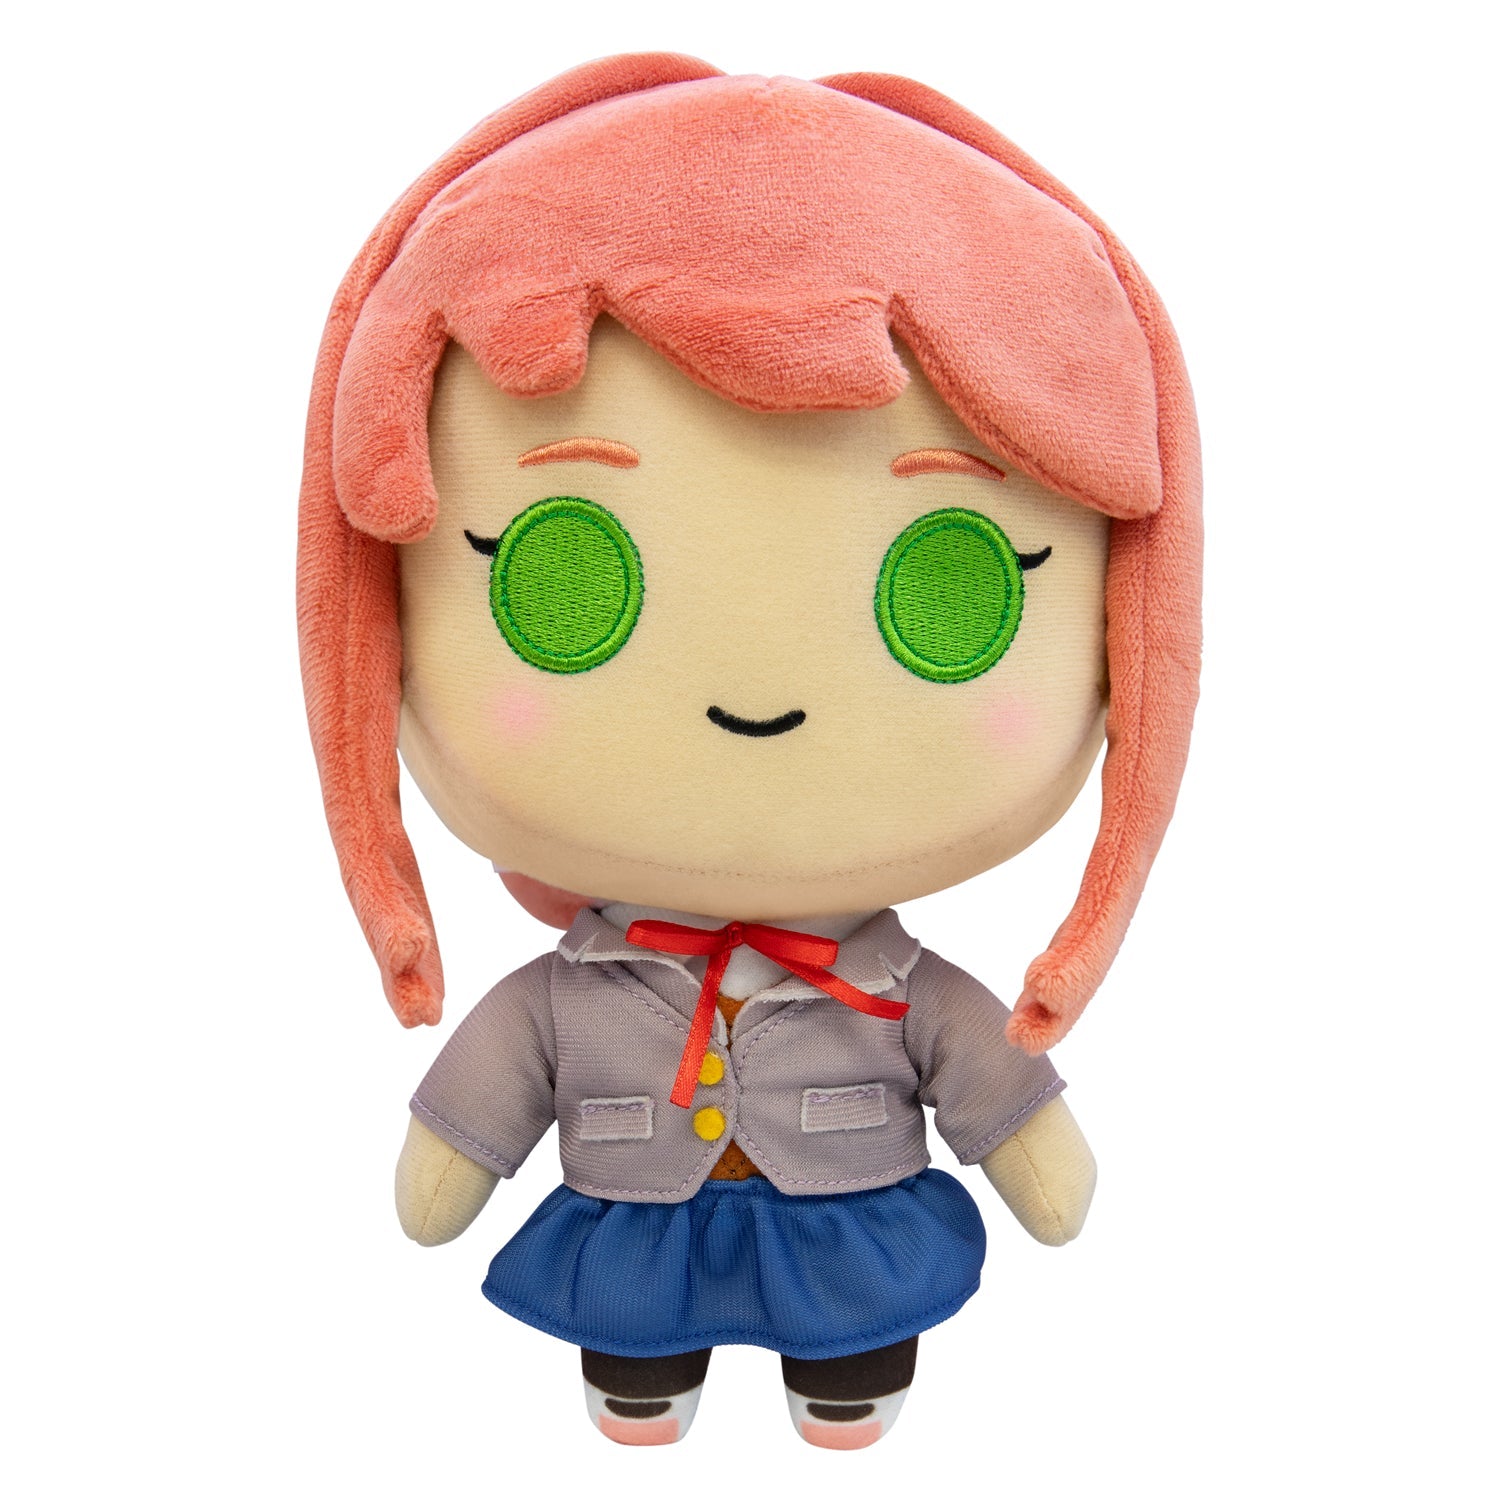 Doki Doki Literature Club - Monika 10 Collector's Plush Toy 💚